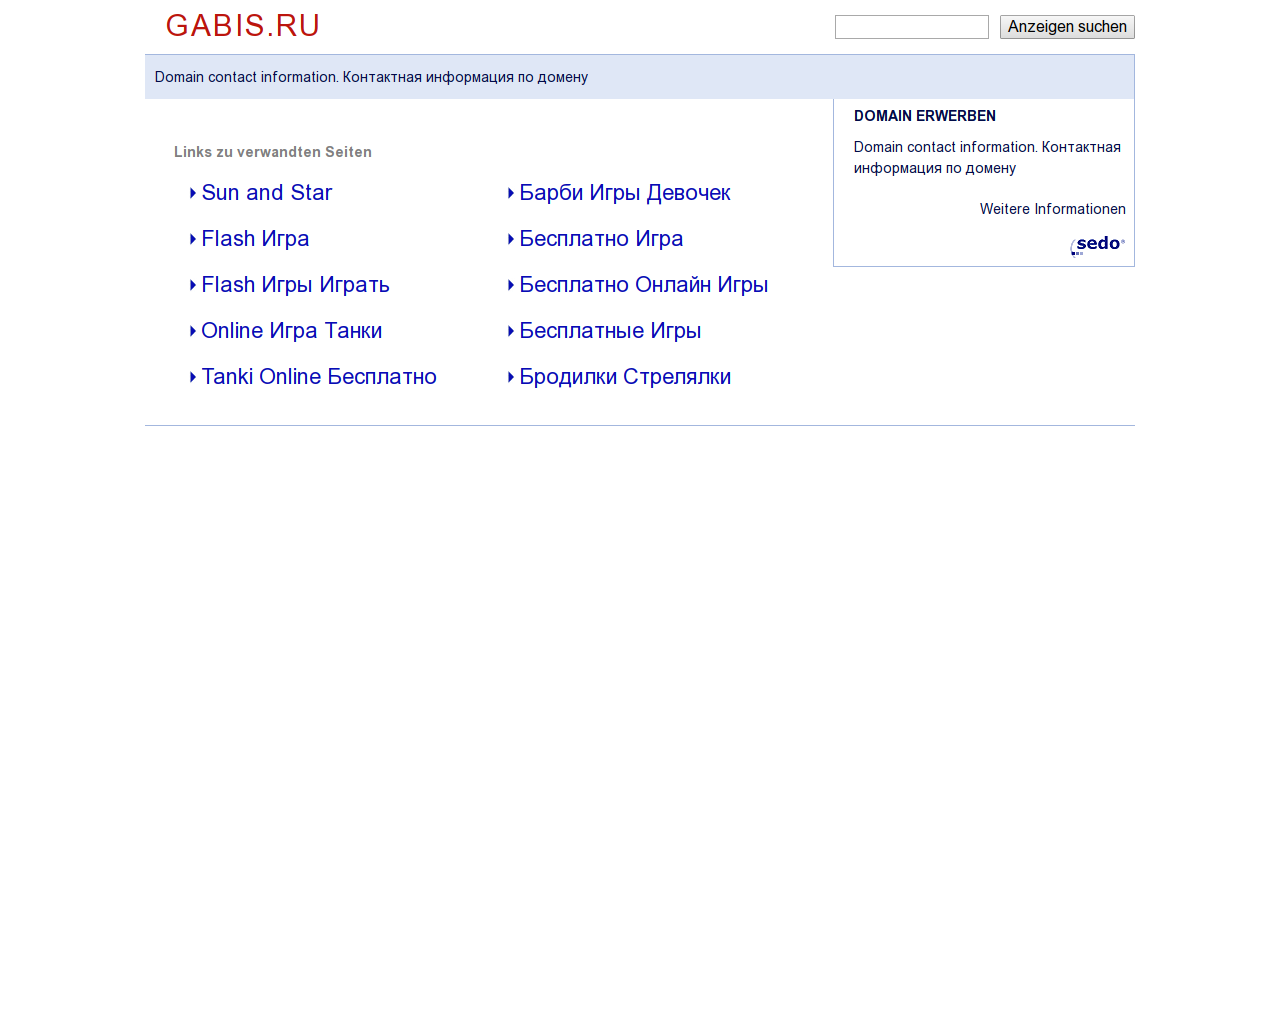 Изображение сайта gabis.ru в разрешении 1280x1024